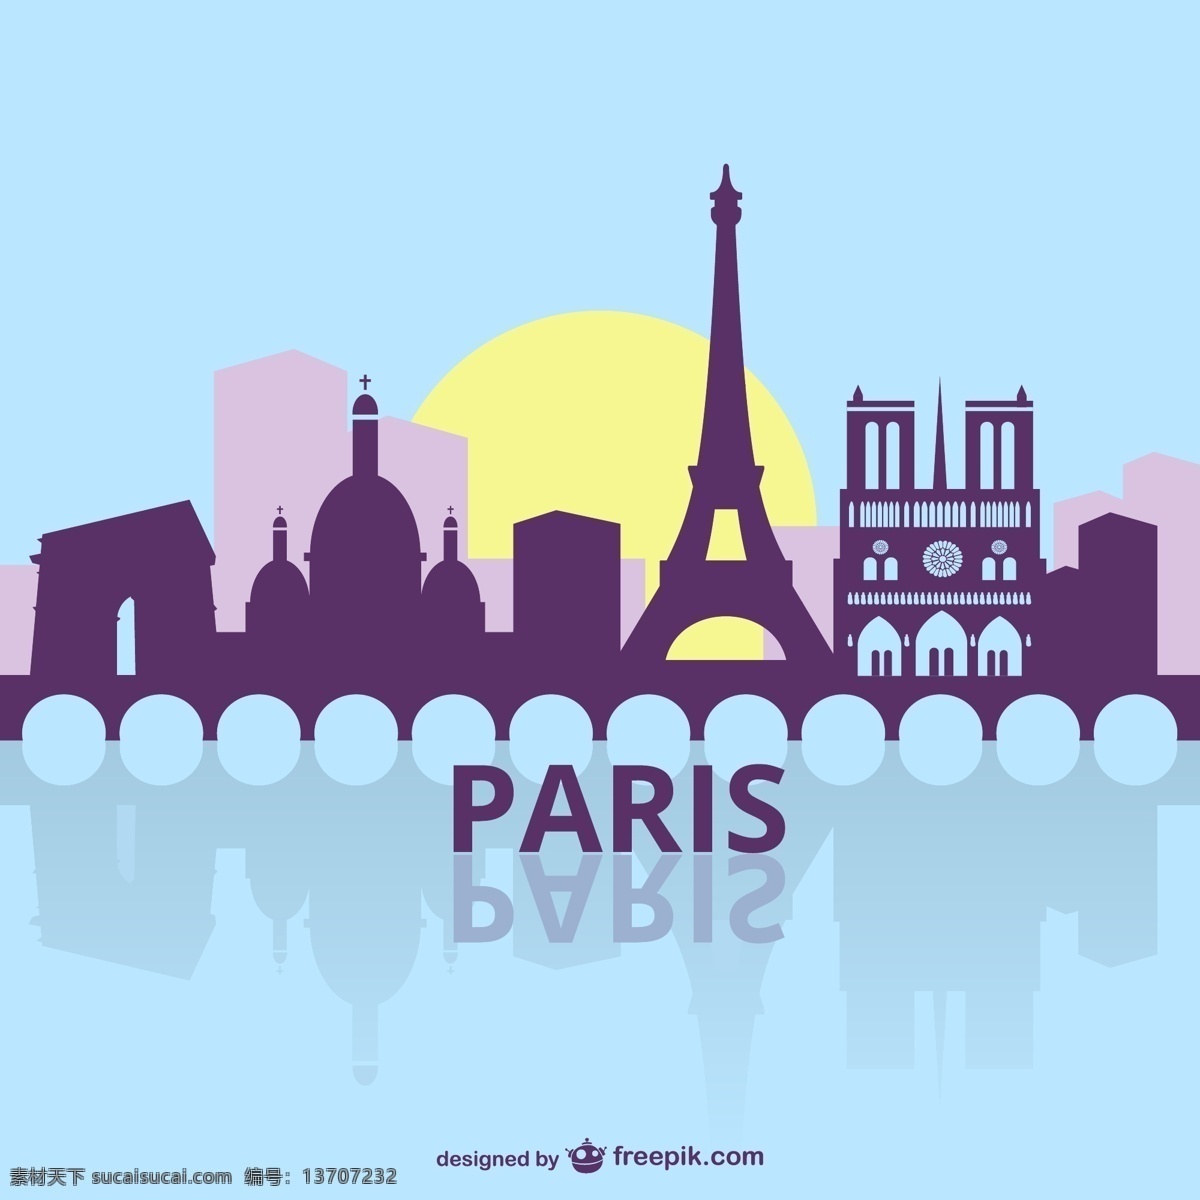 巴黎 城市风貌 剪影 旅游城市 阳光 艺术 平面 轮廓 天际线 镇 旅游 欧洲 法国 插图 绘图 城市景观 地标 城市天际线 法语 青色 天蓝色